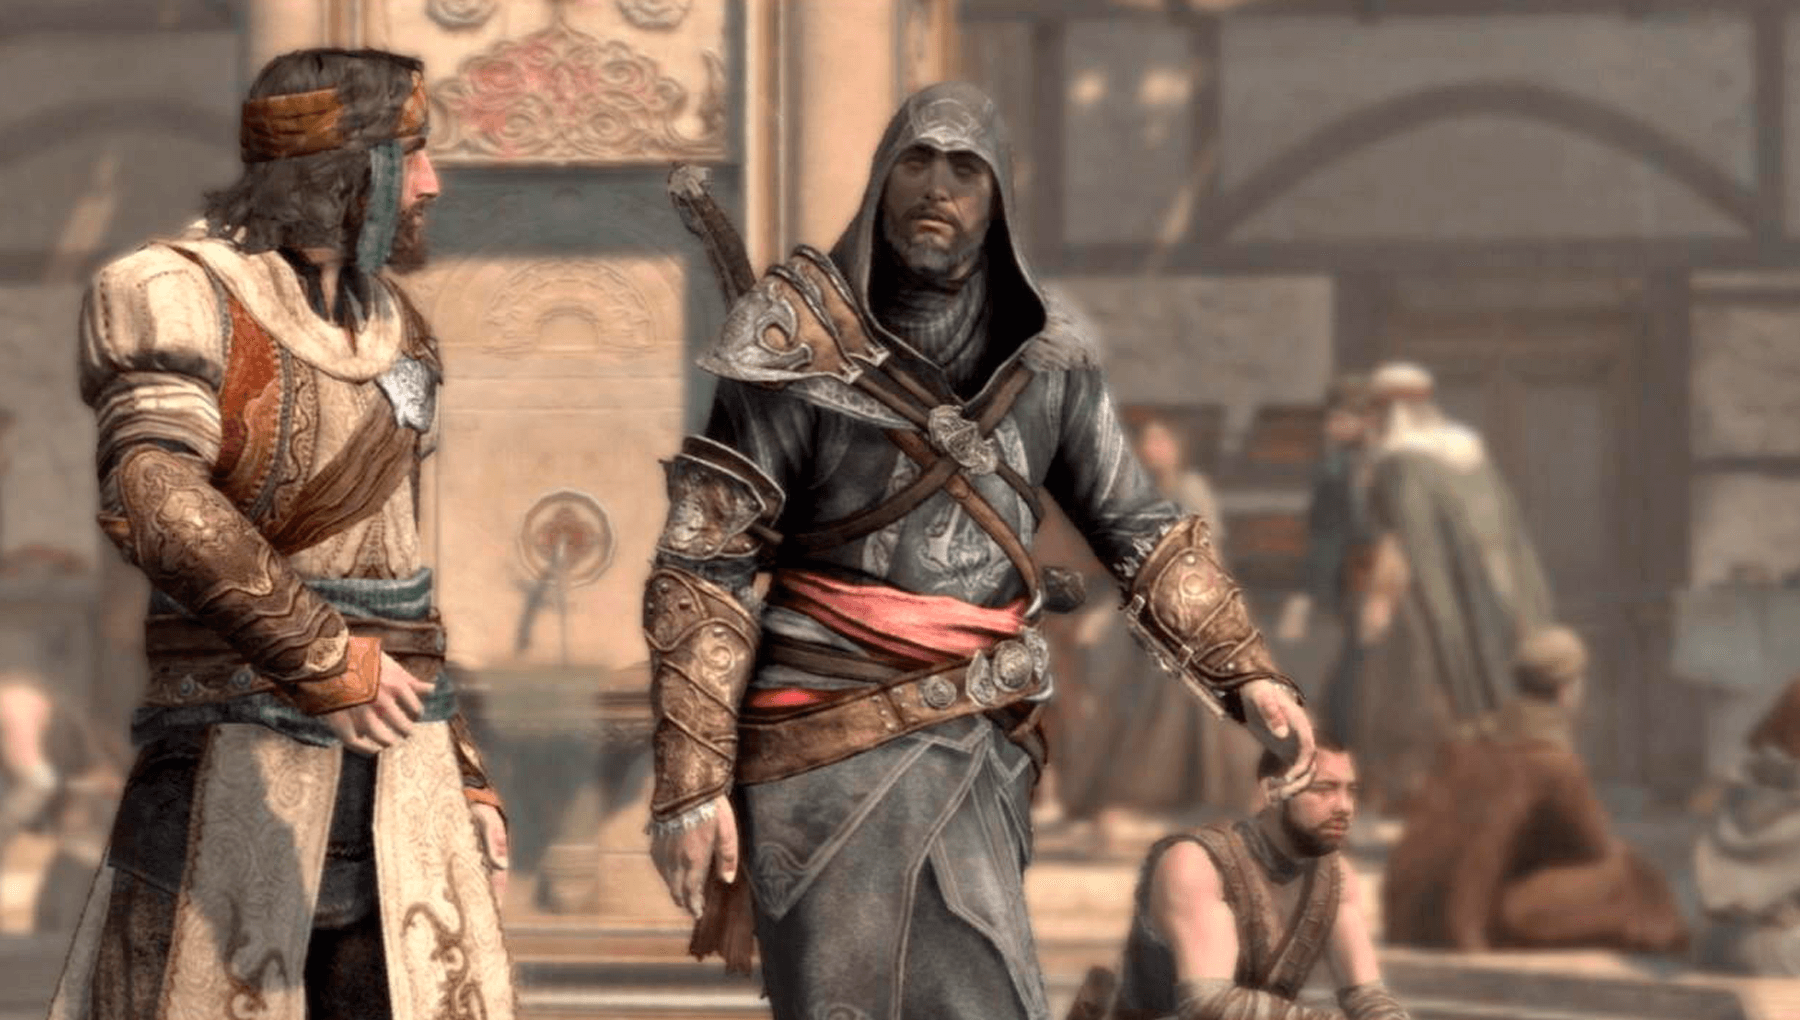 Игра Assassin's Creed: Откровения. Специальное Издание (ps3) Б/у (rus) -  Game Deals - AliExpress